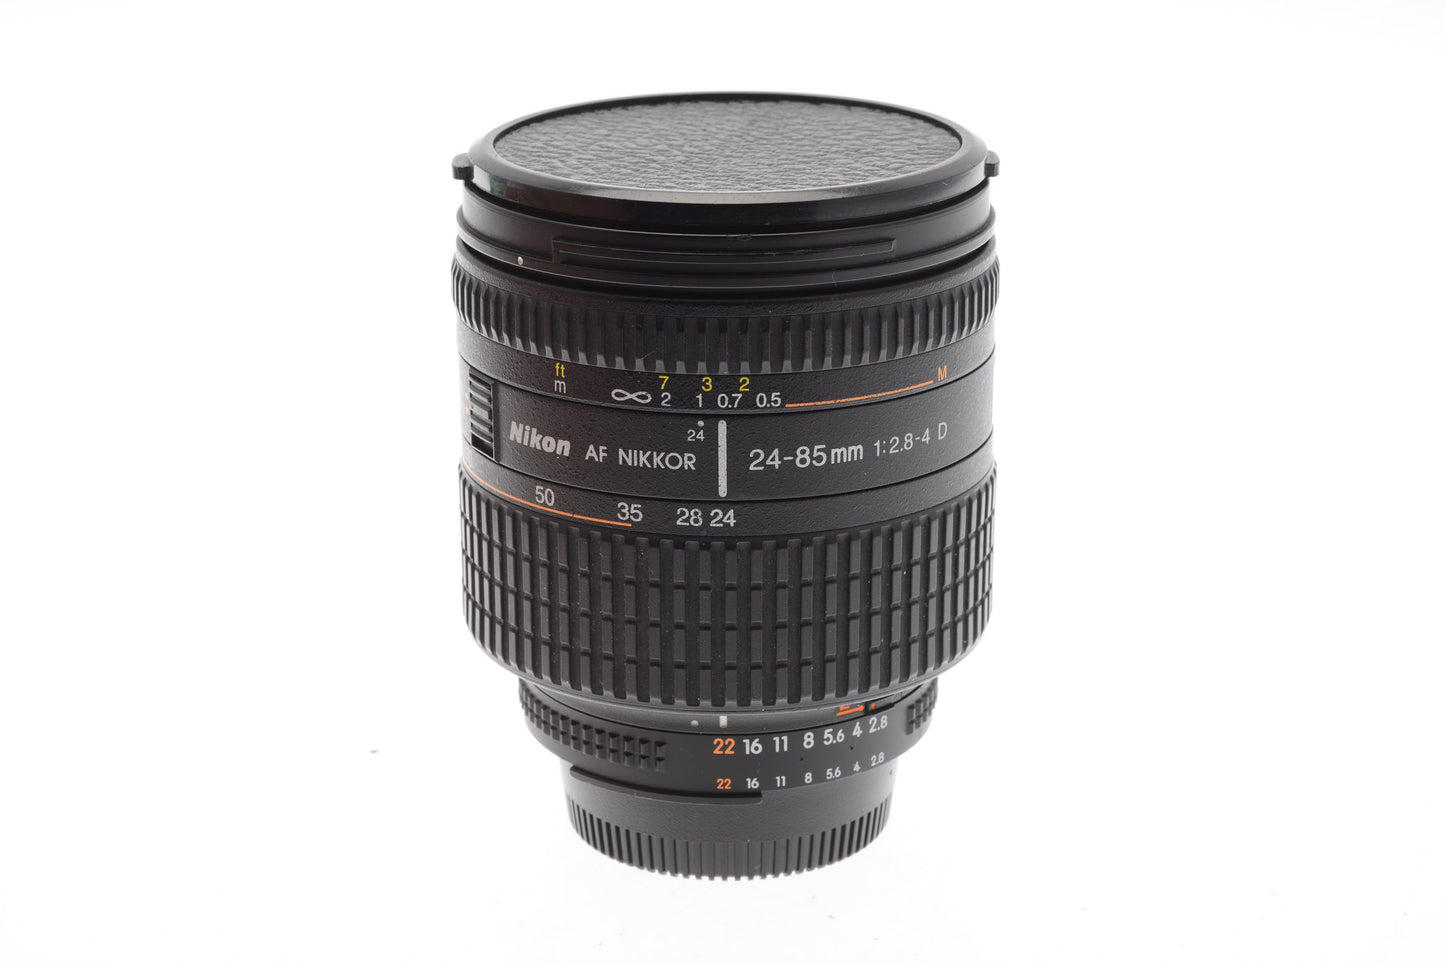 Nikon 24-85mm f2.8-4 D AF Nikkor IF Aspherical Macro - Lens